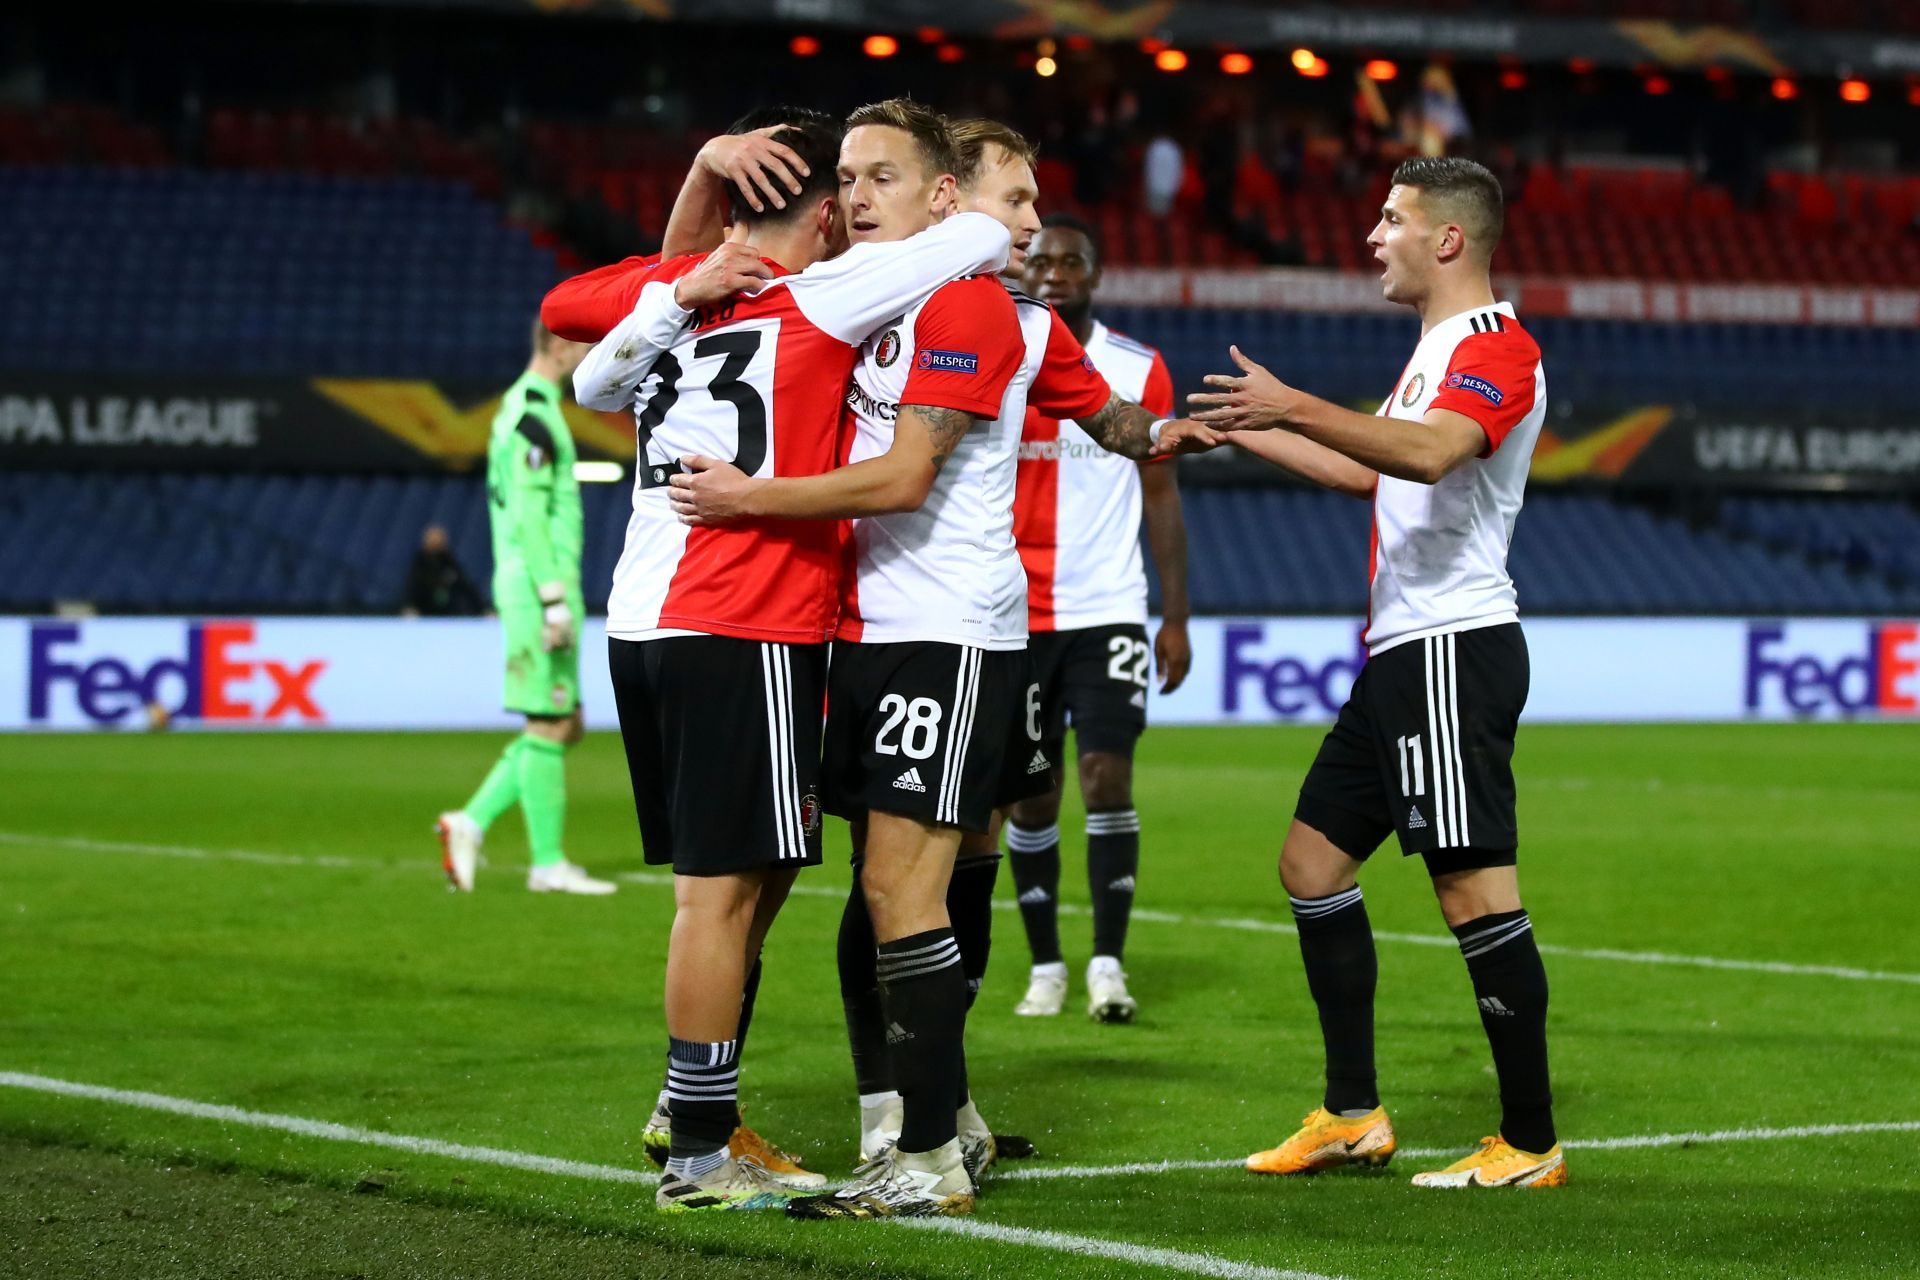 Feyenoord will face RKC Waalwijk on Sunday